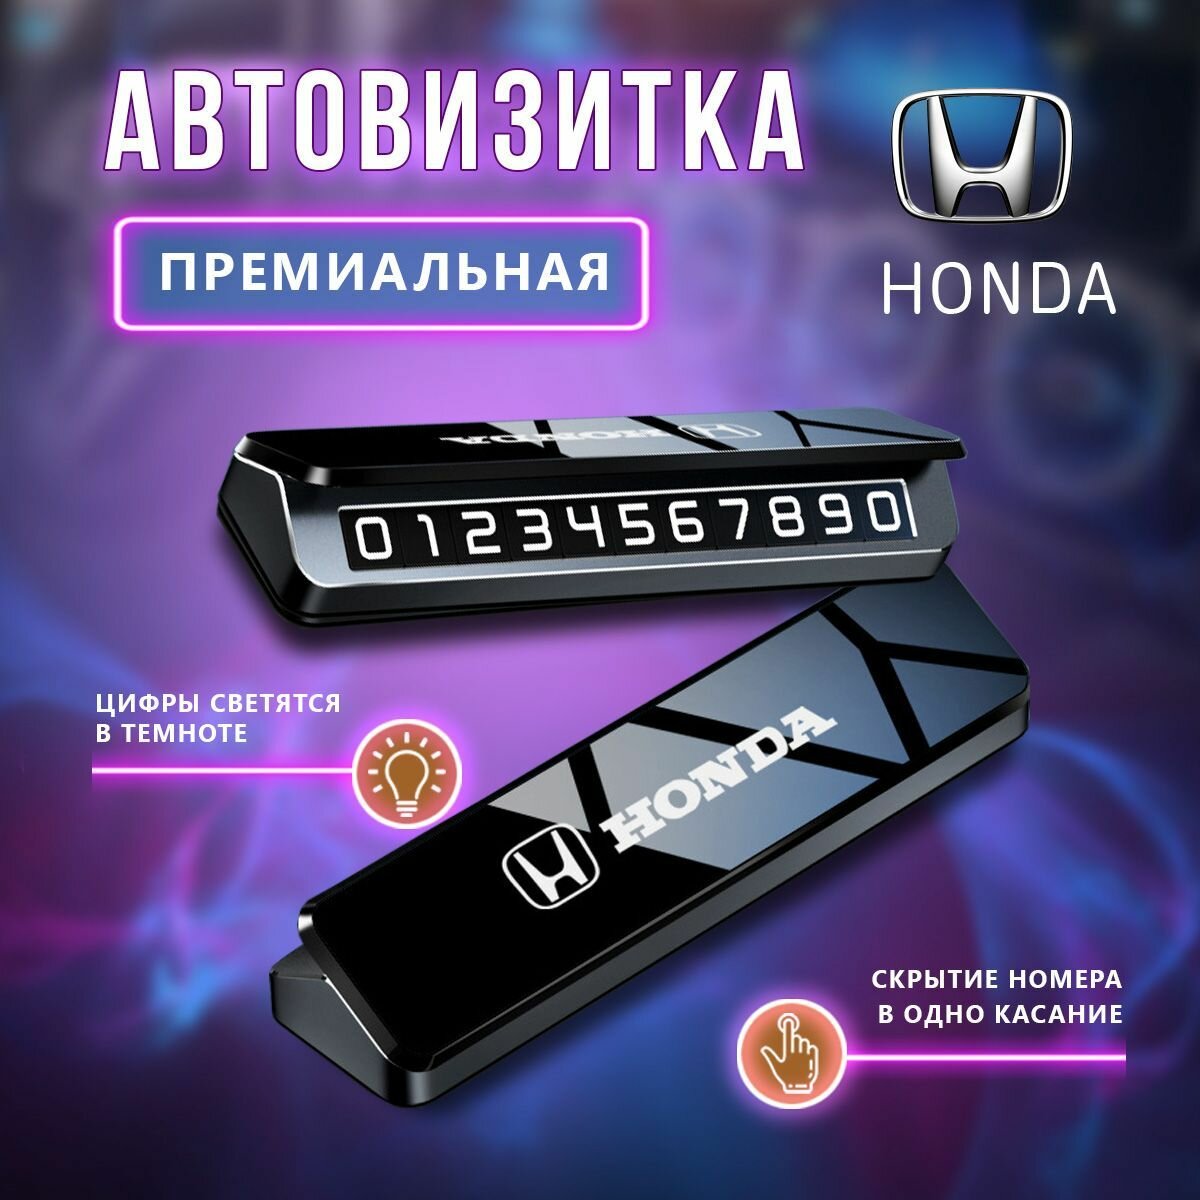 Премиальная парковочная визитка Honda